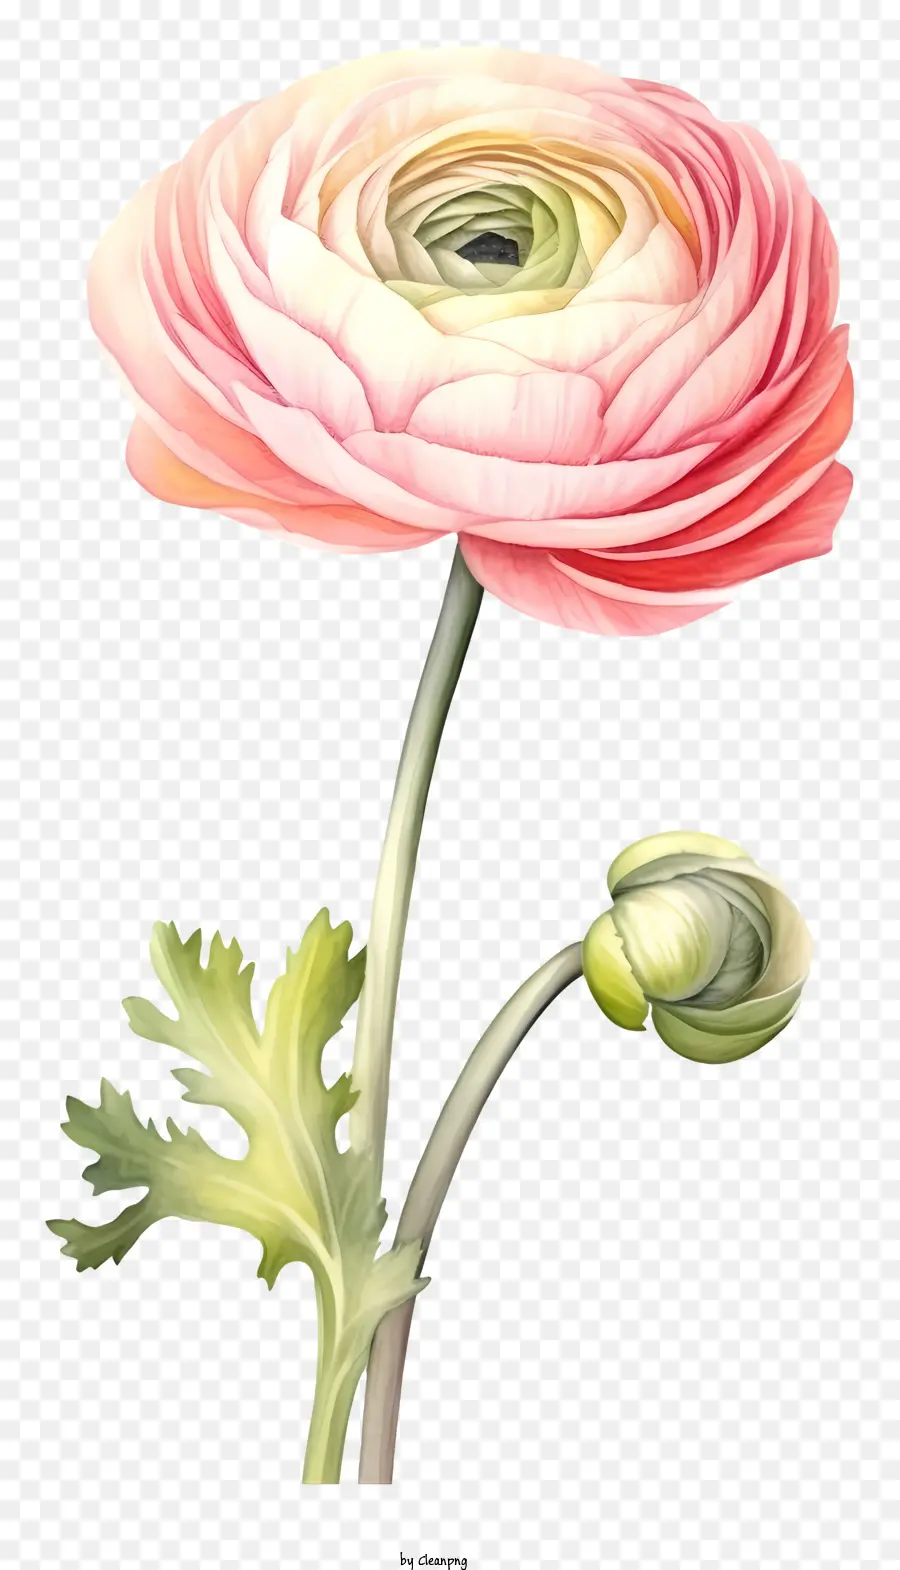 Pink Anemone Blume Staubblatt und Pistil Curled Blütenblätter blühende grüne Pflanze blühen - Bild einer rosa Anemoneblume; 
Fehlen Details und Hintergrund